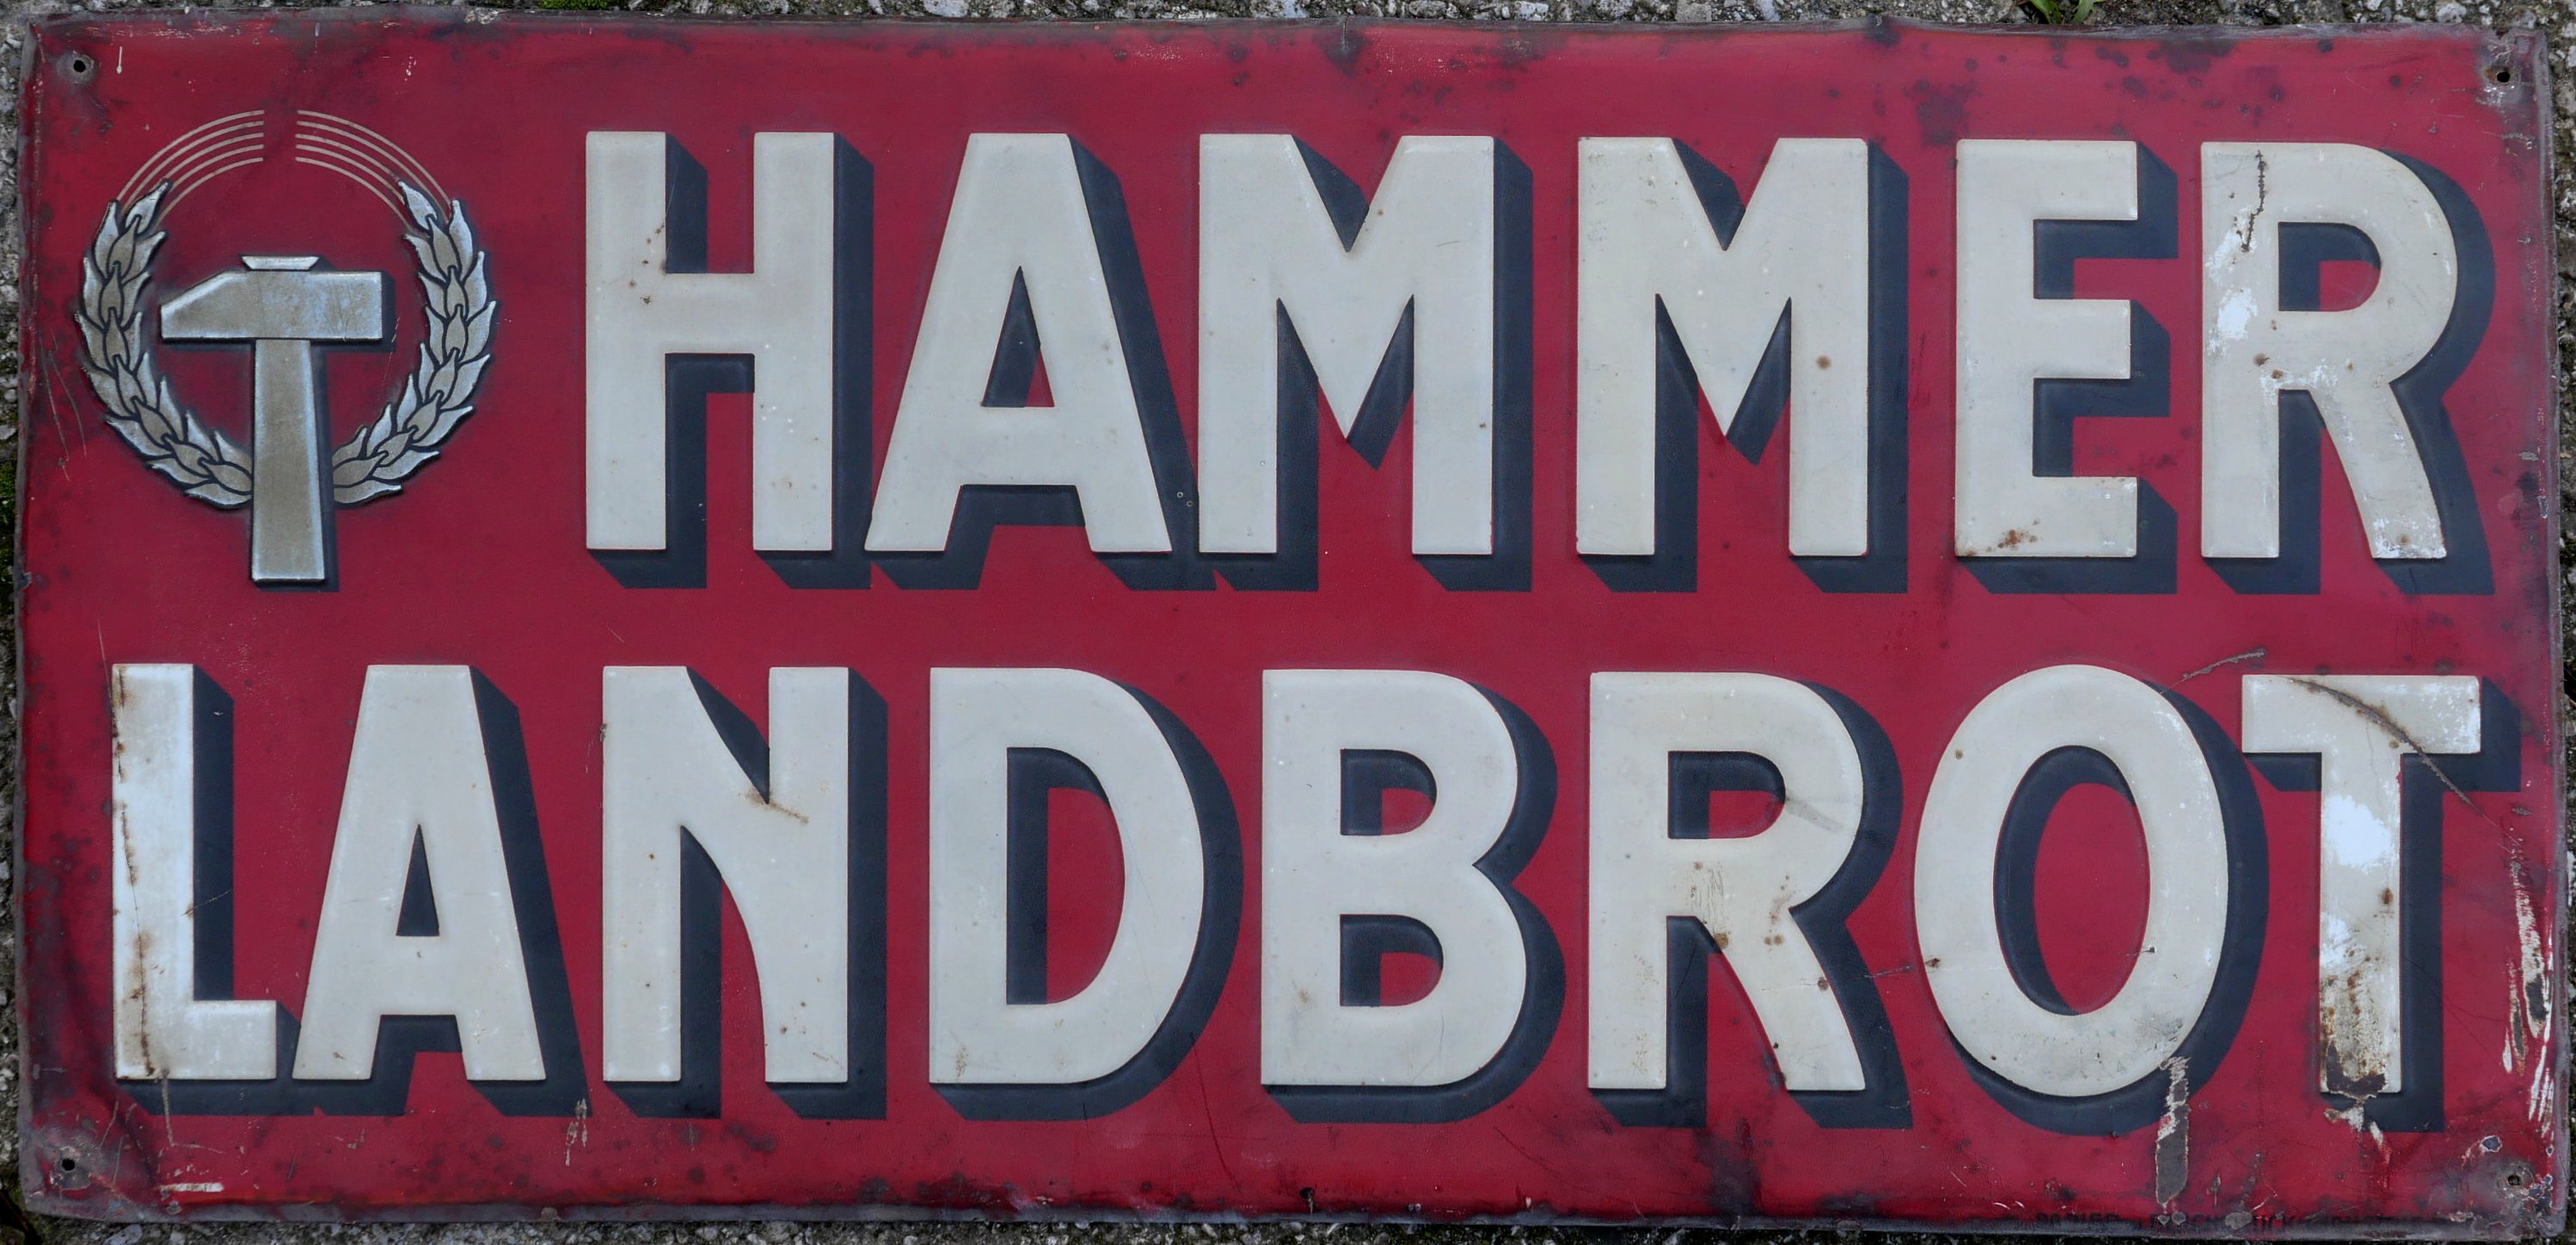 Hammer Landbrot